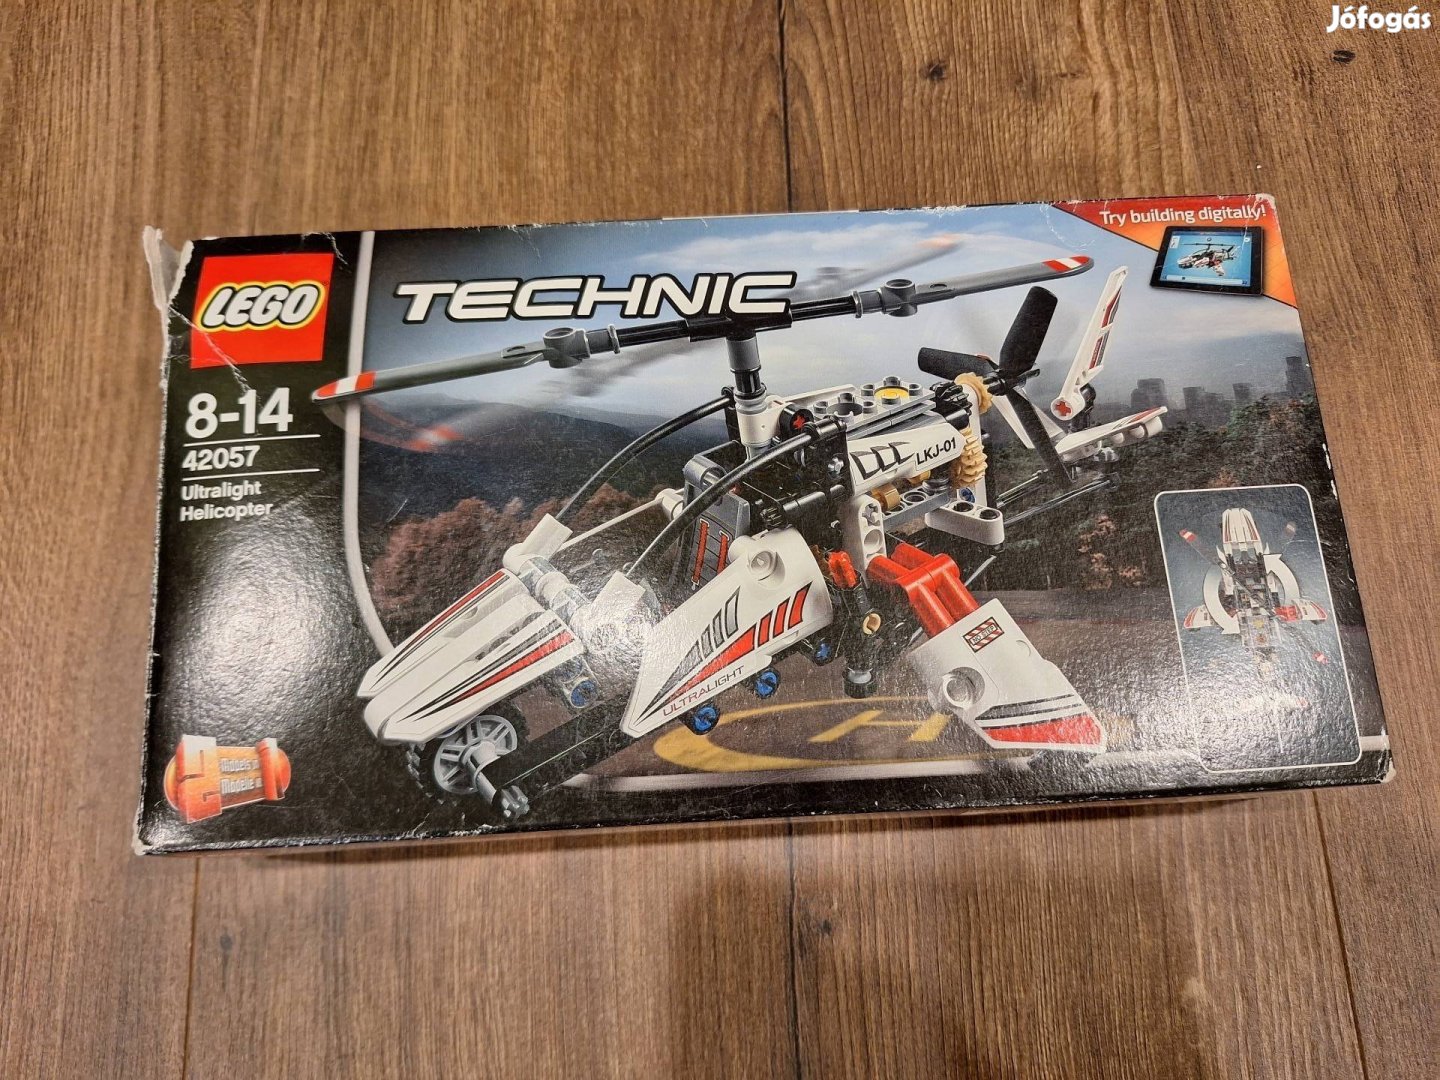 Lego Technic 42057- Ultrakönnyű helikopter, hiánytalan, ép